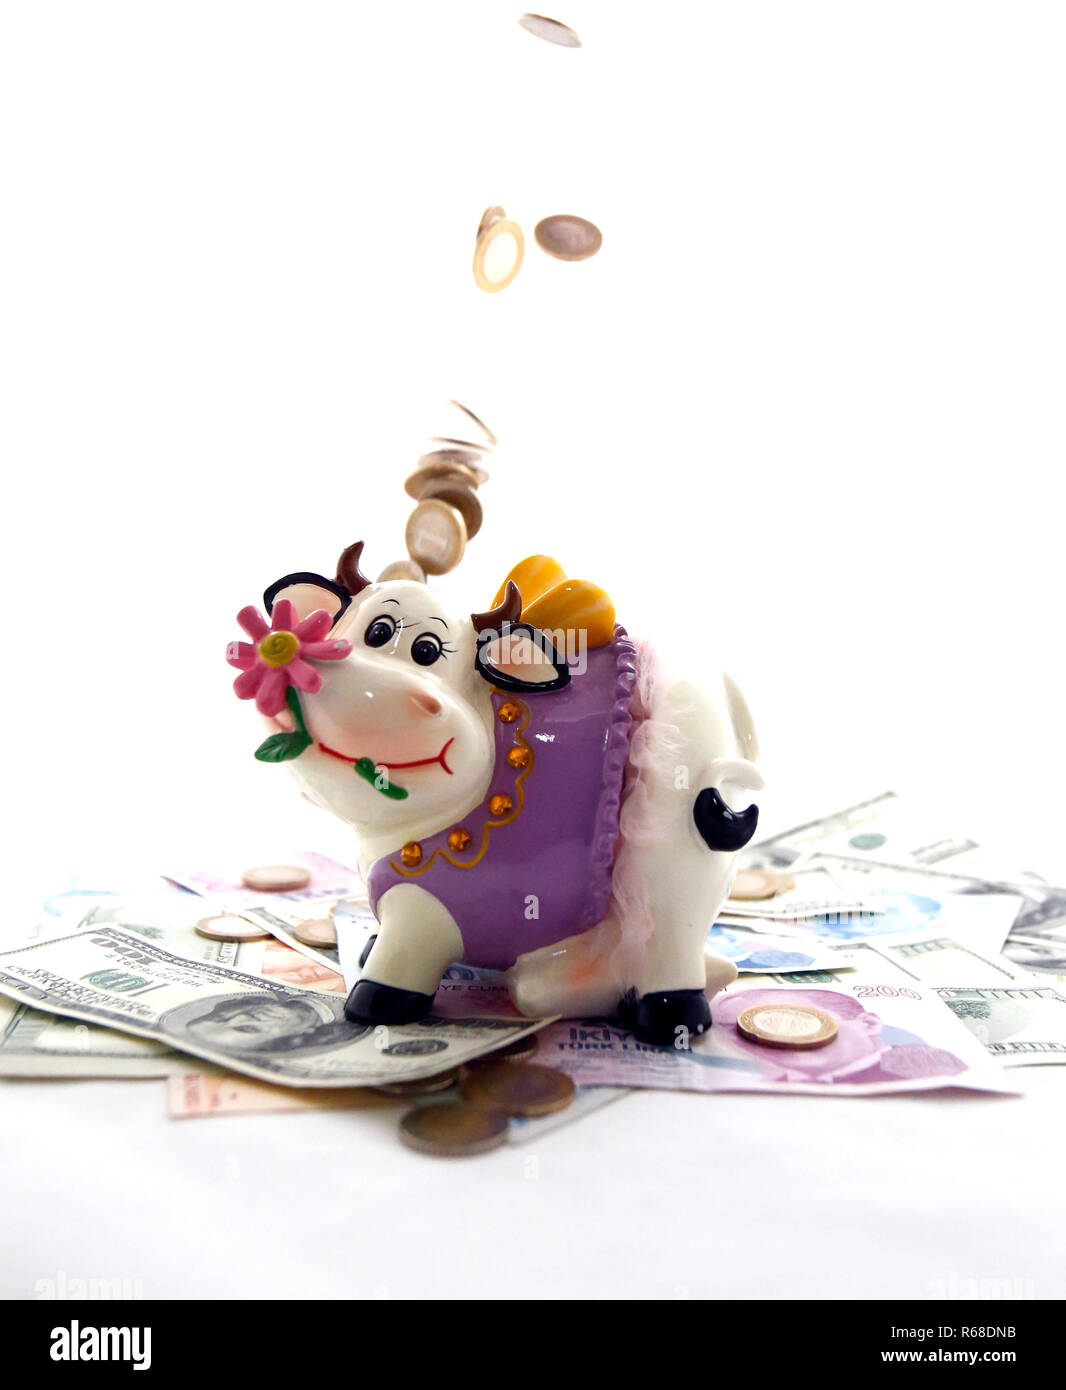 Cow coin bank Stock Photo